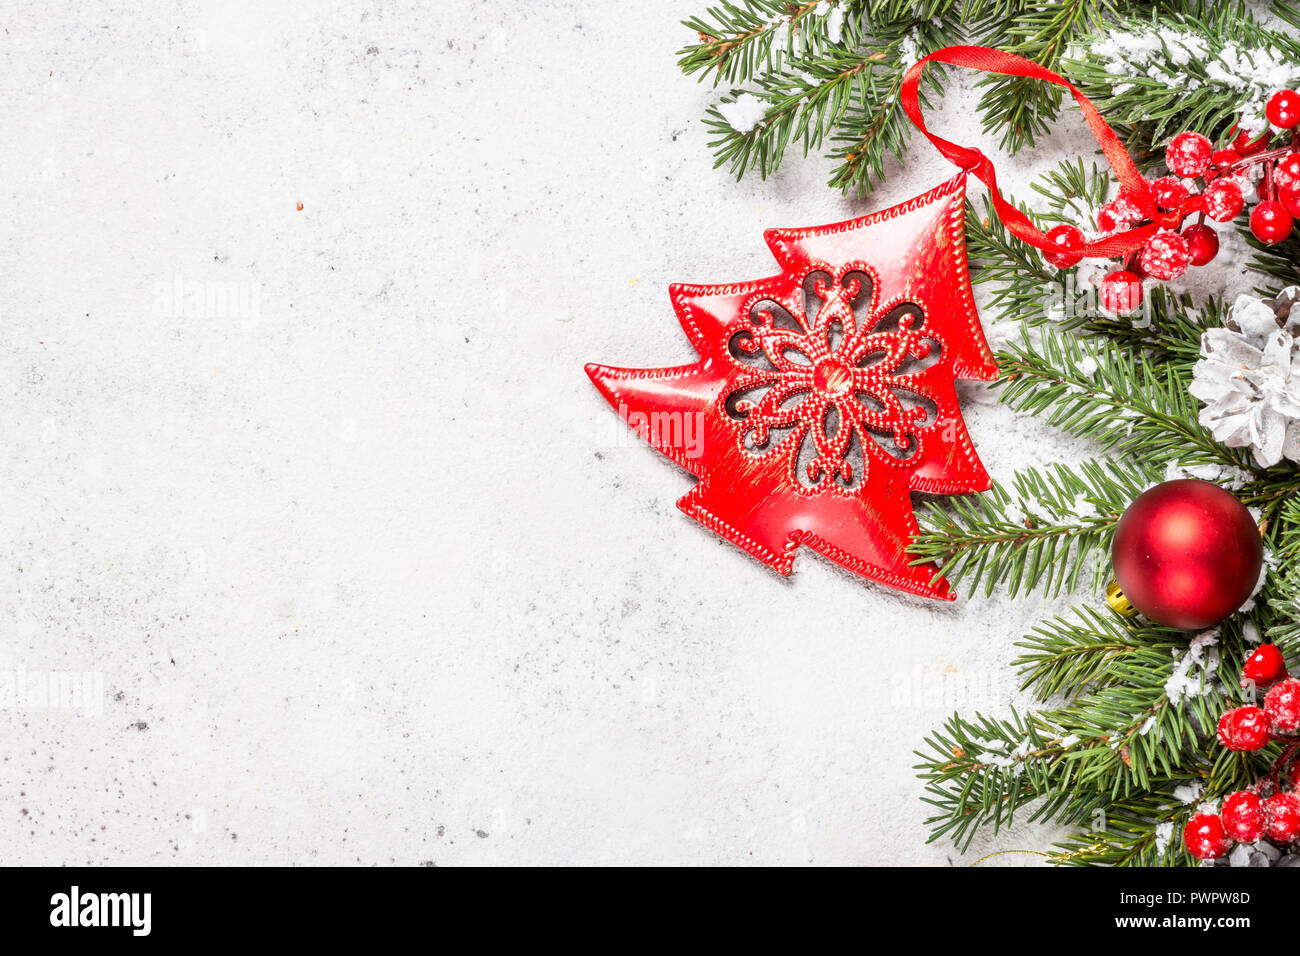 Weihnachten Hintergrund mit Tannenbaum und Dekorationen auf Weiß zurück  Stockfotografie - Alamy